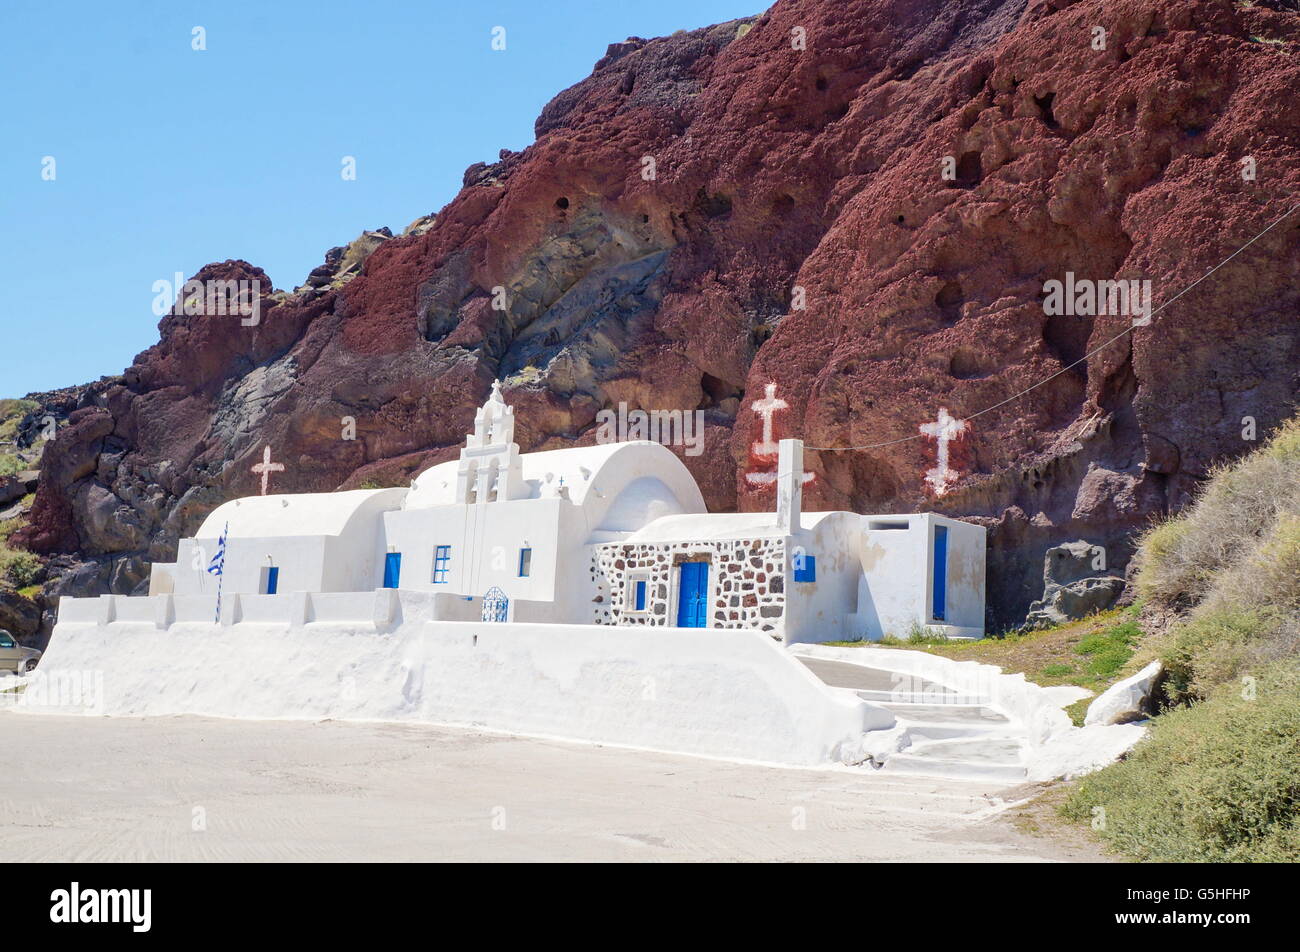 Église de l'île de Santorin en Grèce, construit en manière reconnaissable. Plage de rochers rouges Banque D'Images